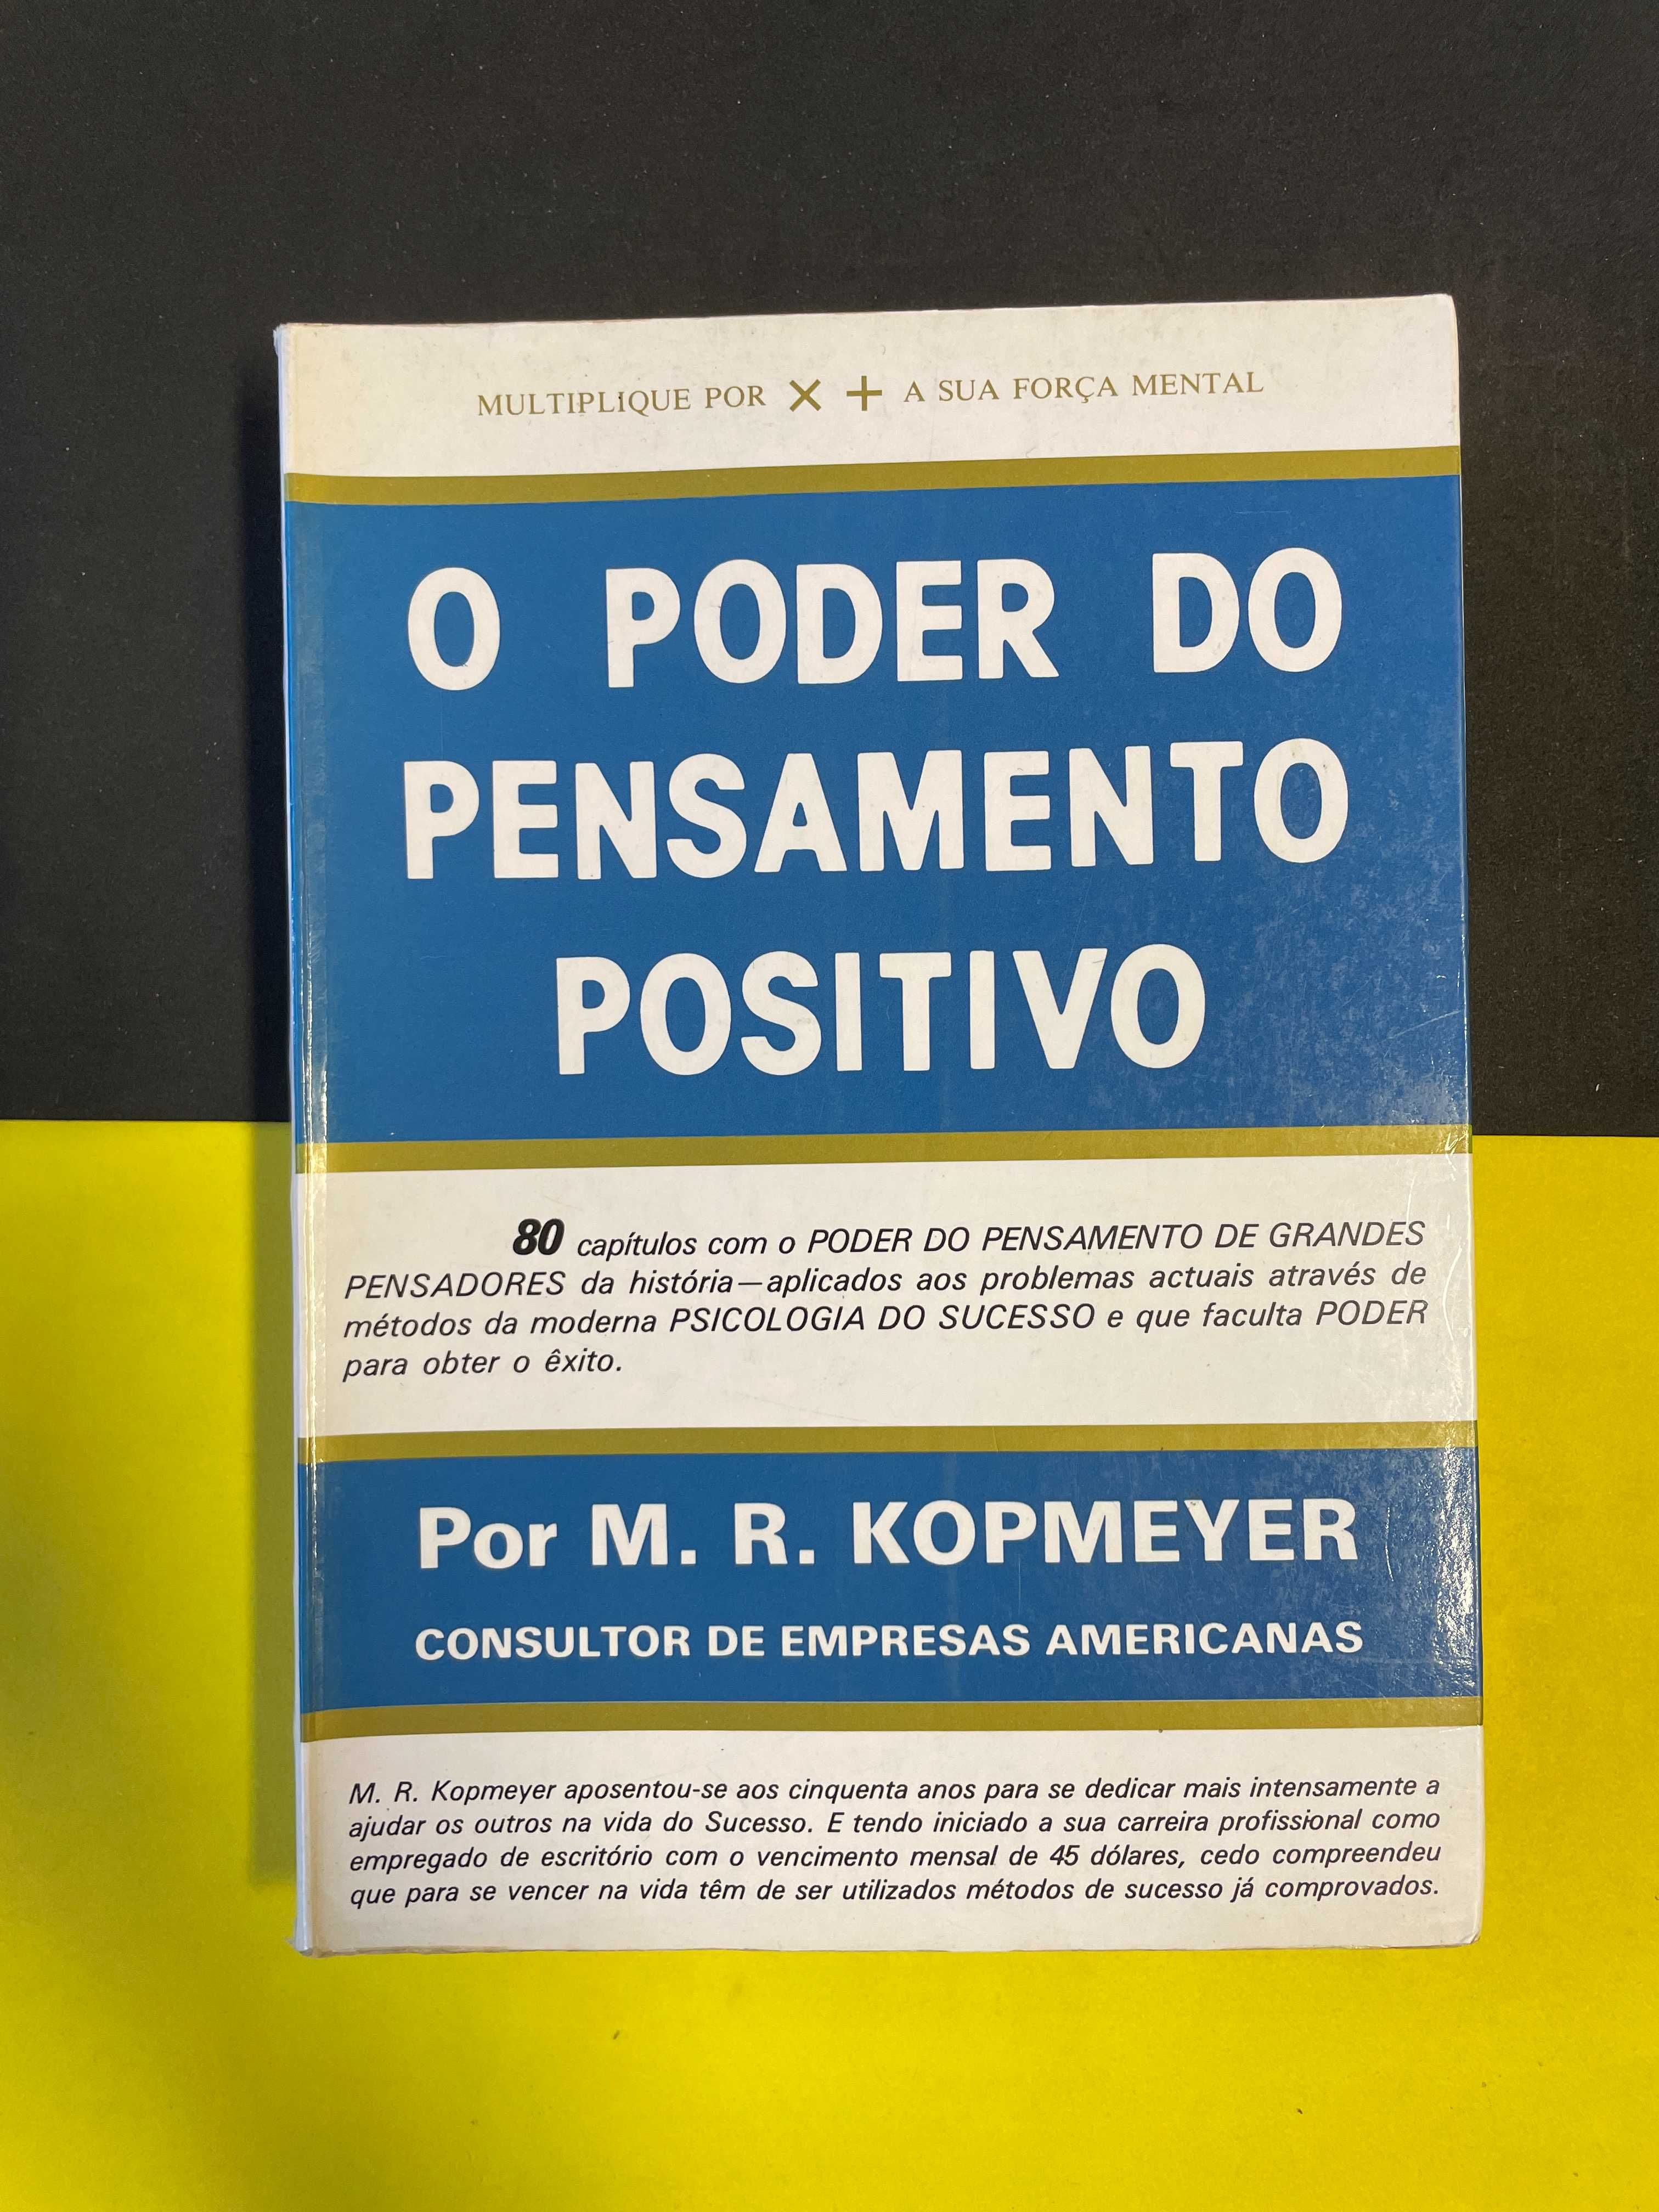 M. R. Kopmeyer - O Poder do Pensamento Positivo